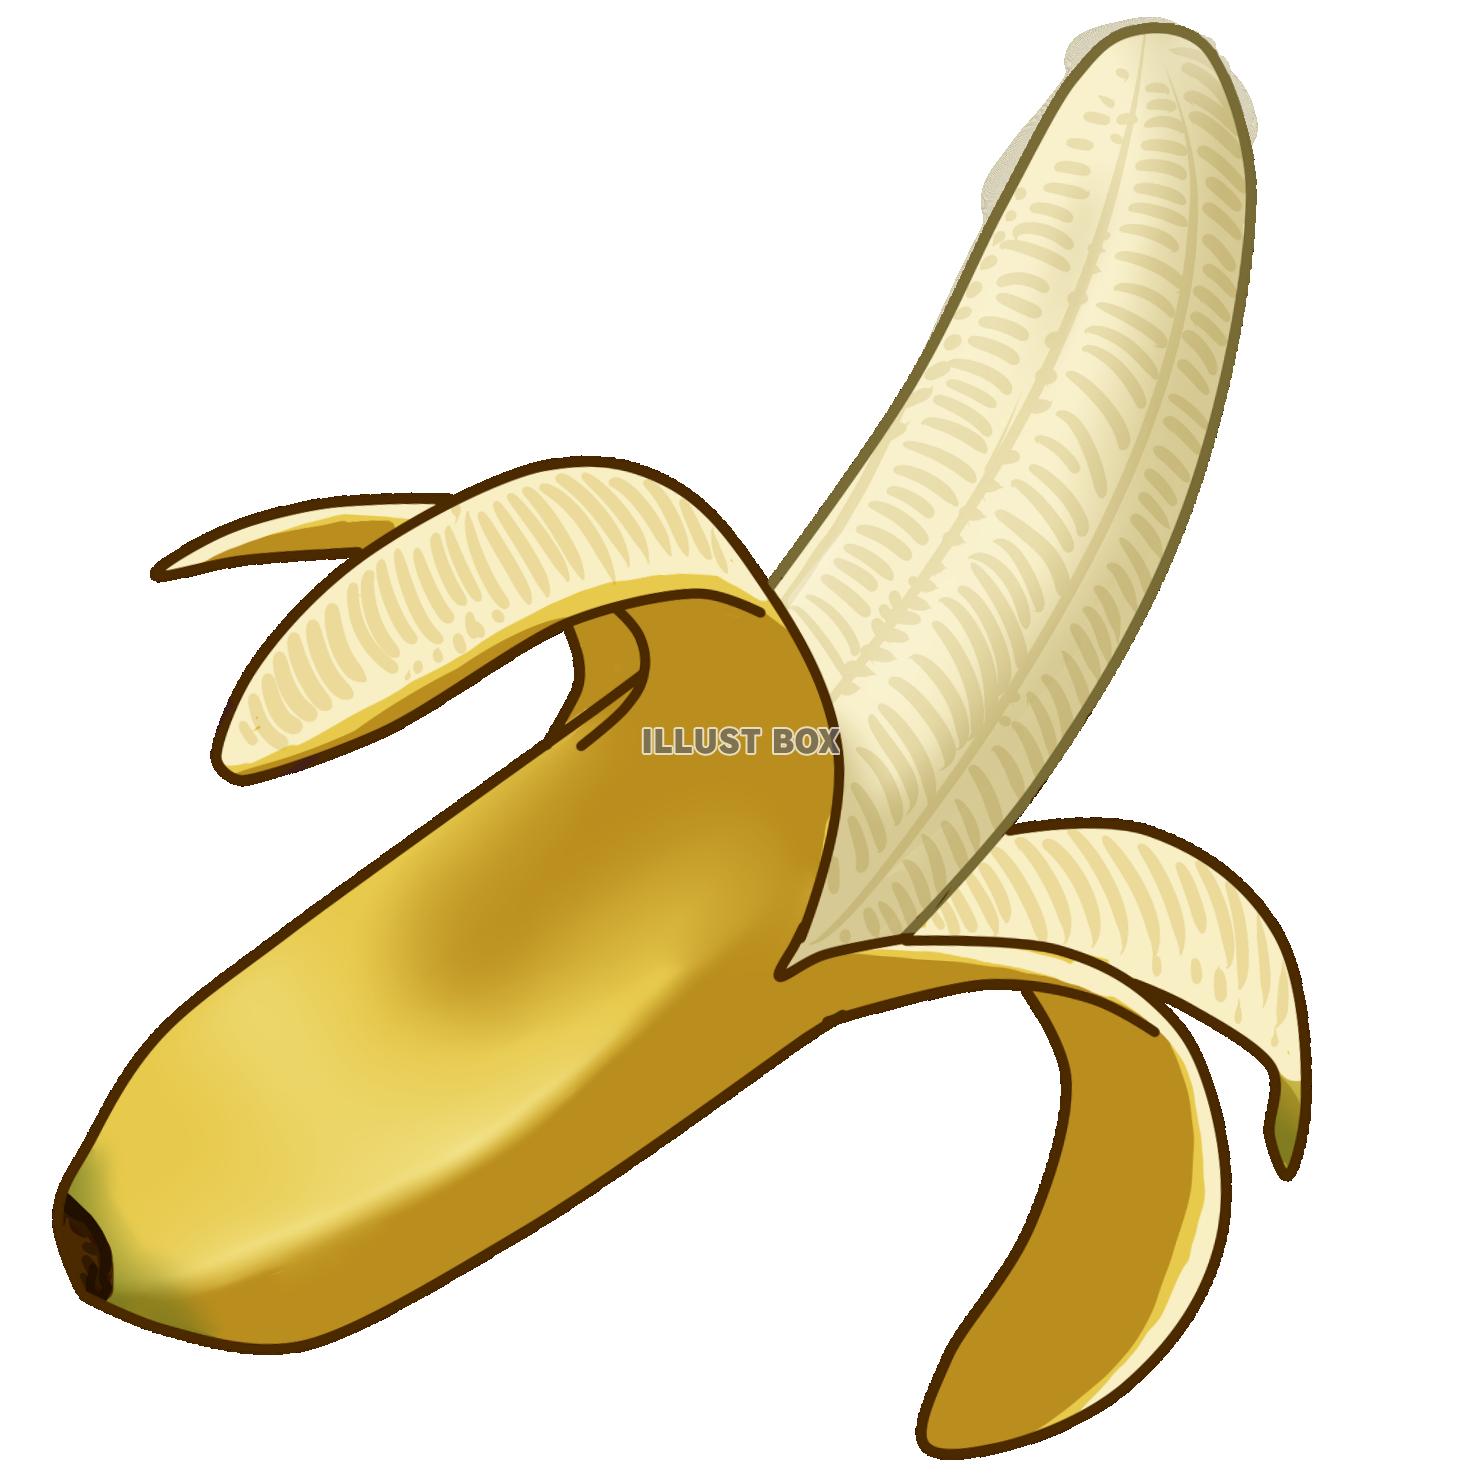 皮むきバナナ